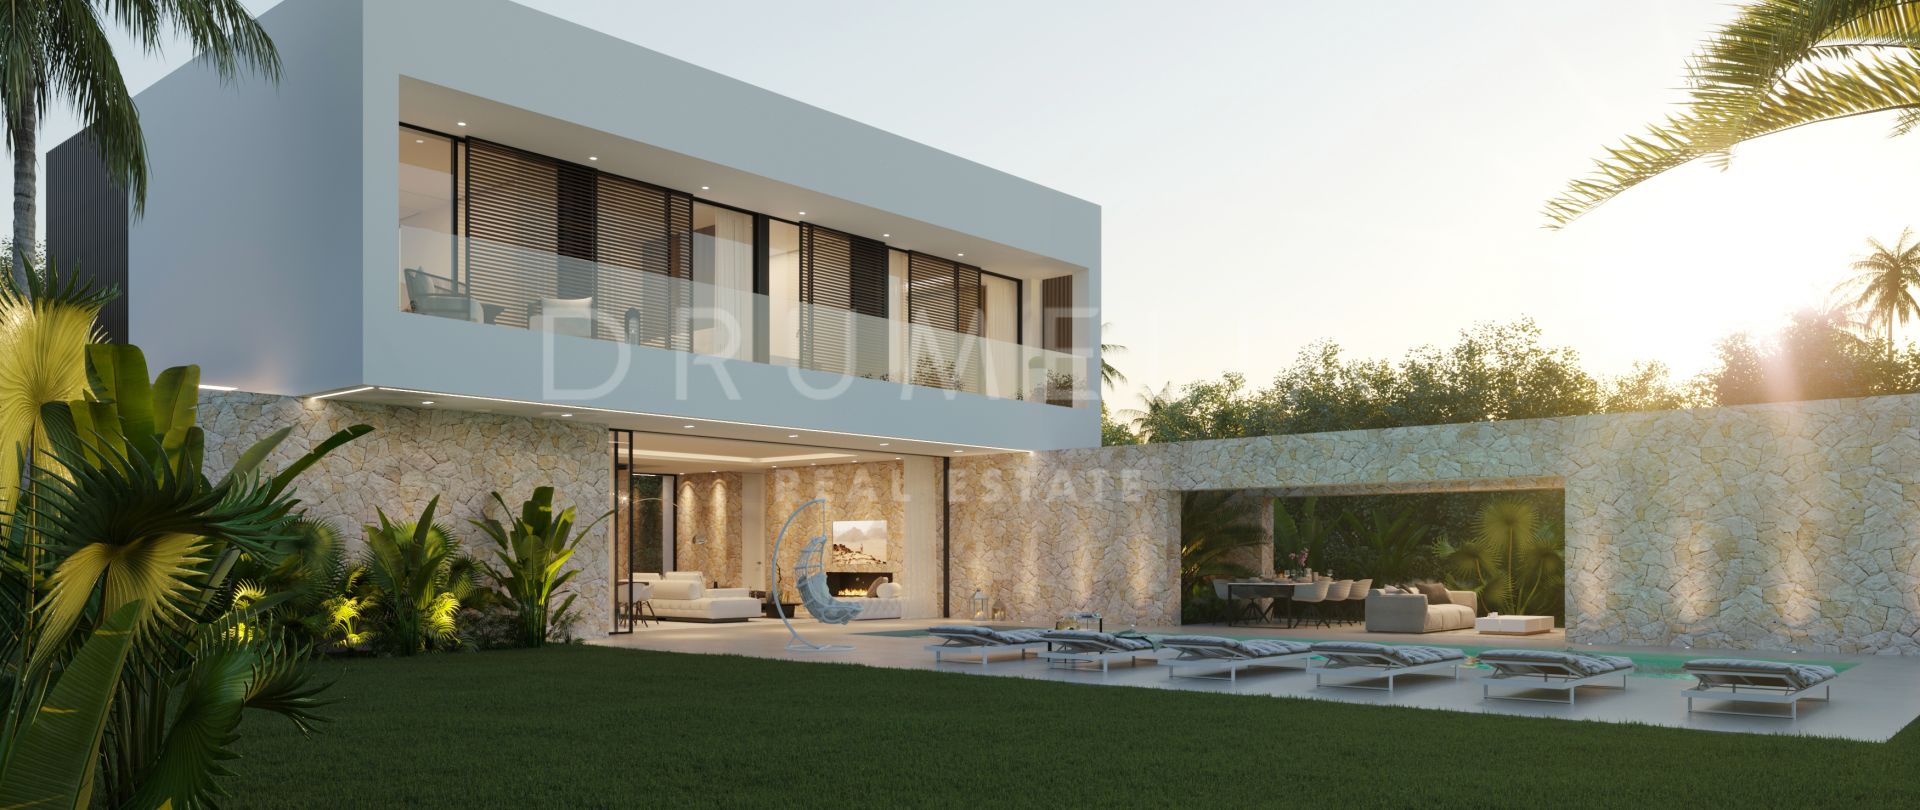 Villa Picasso 20 - Impresionante villa junto a la playa en una nueva urbanización de alto nivel, Cortijo Blanco, San Pedro